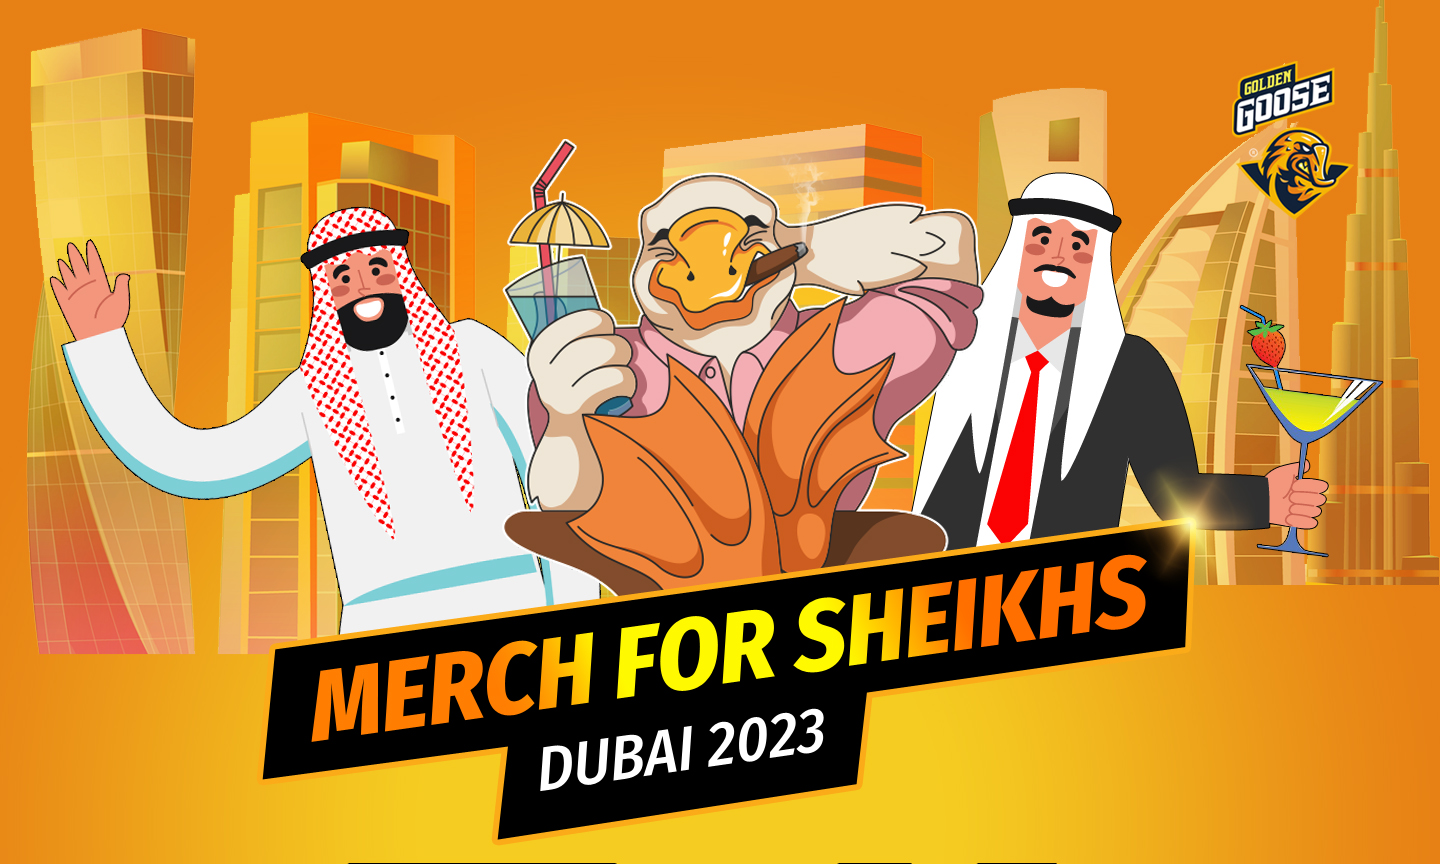 Merch for sheikhs: Affiliate World Dubai 2023